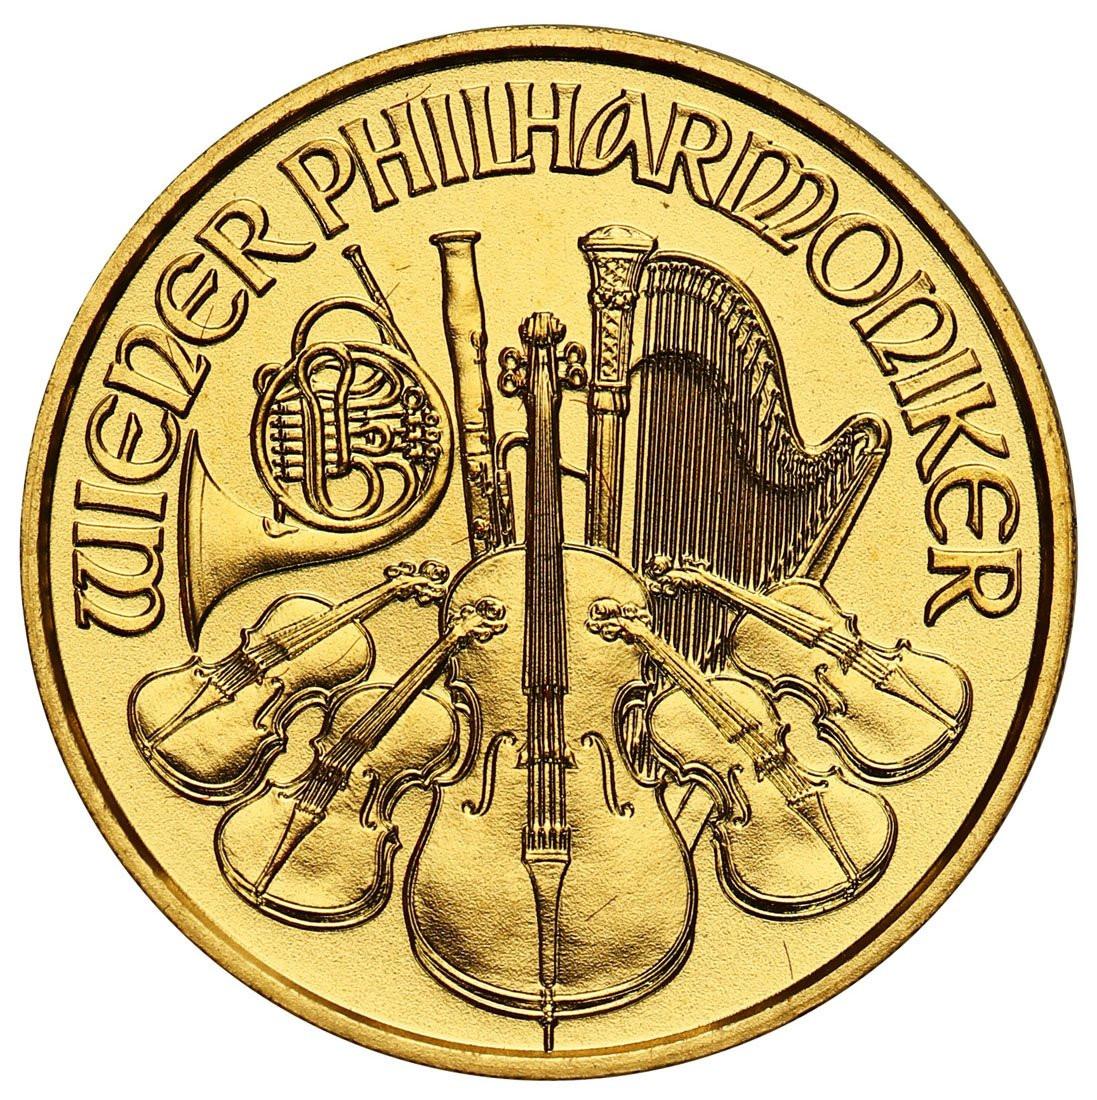 Austria. 10 Euro 2015 Filharmonicy - 1/10 uncja złota